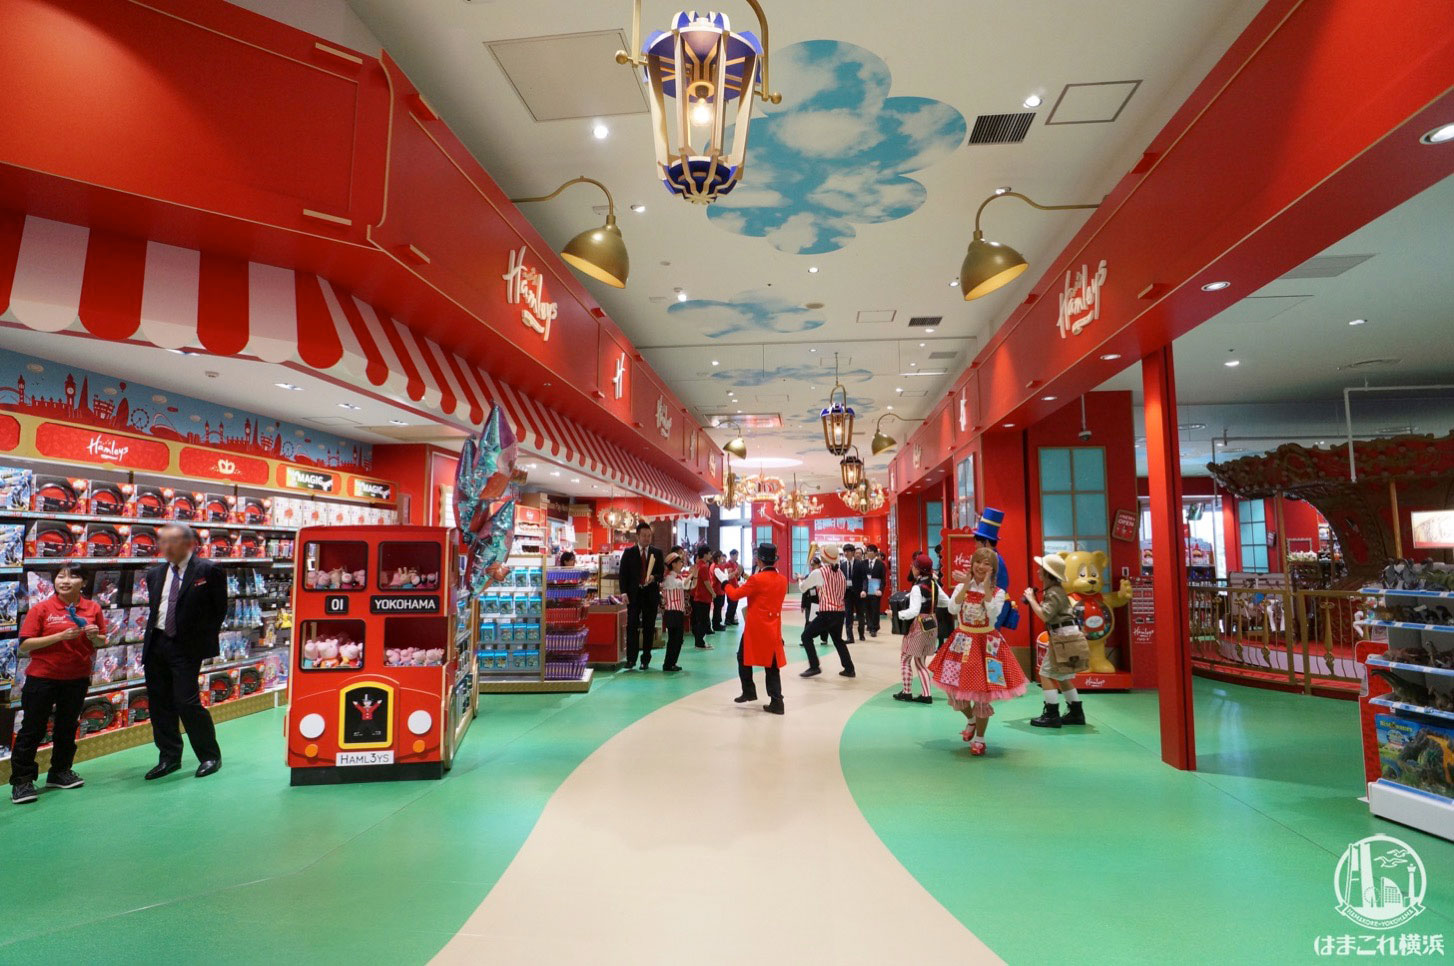 ハムリーズ 横浜ワールドポーターズ店が驚異の広さ 1日遊べるおもちゃのパーク徹底レポ はまこれ横浜